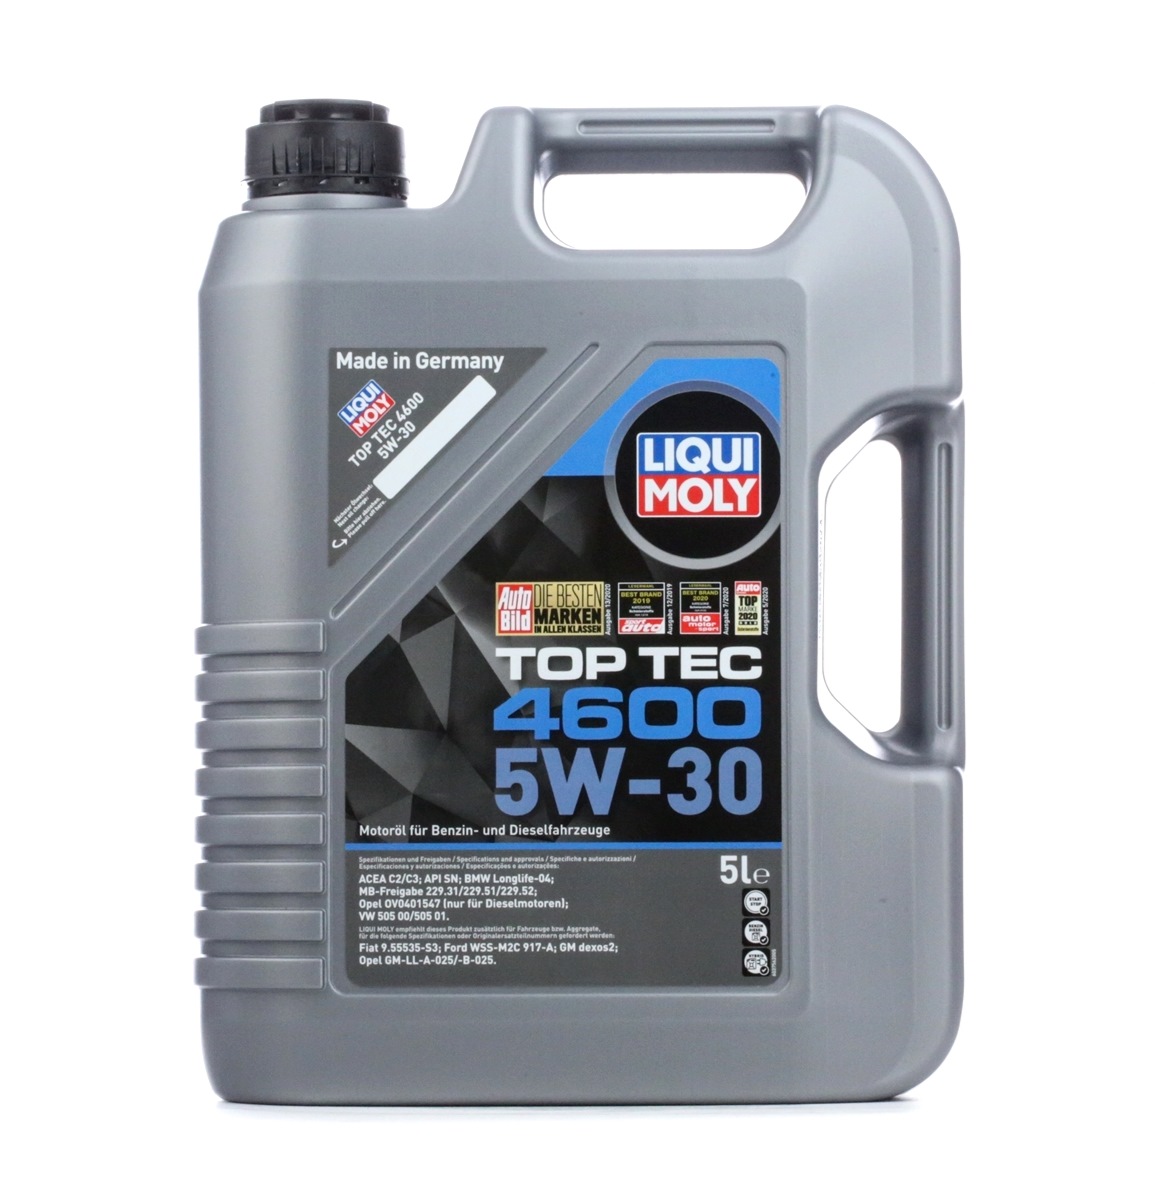 Buy Automobile oil LIQUI MOLY petrol 2316 Top Tec, 4600 5W-30, 5l, Synthetic Oil